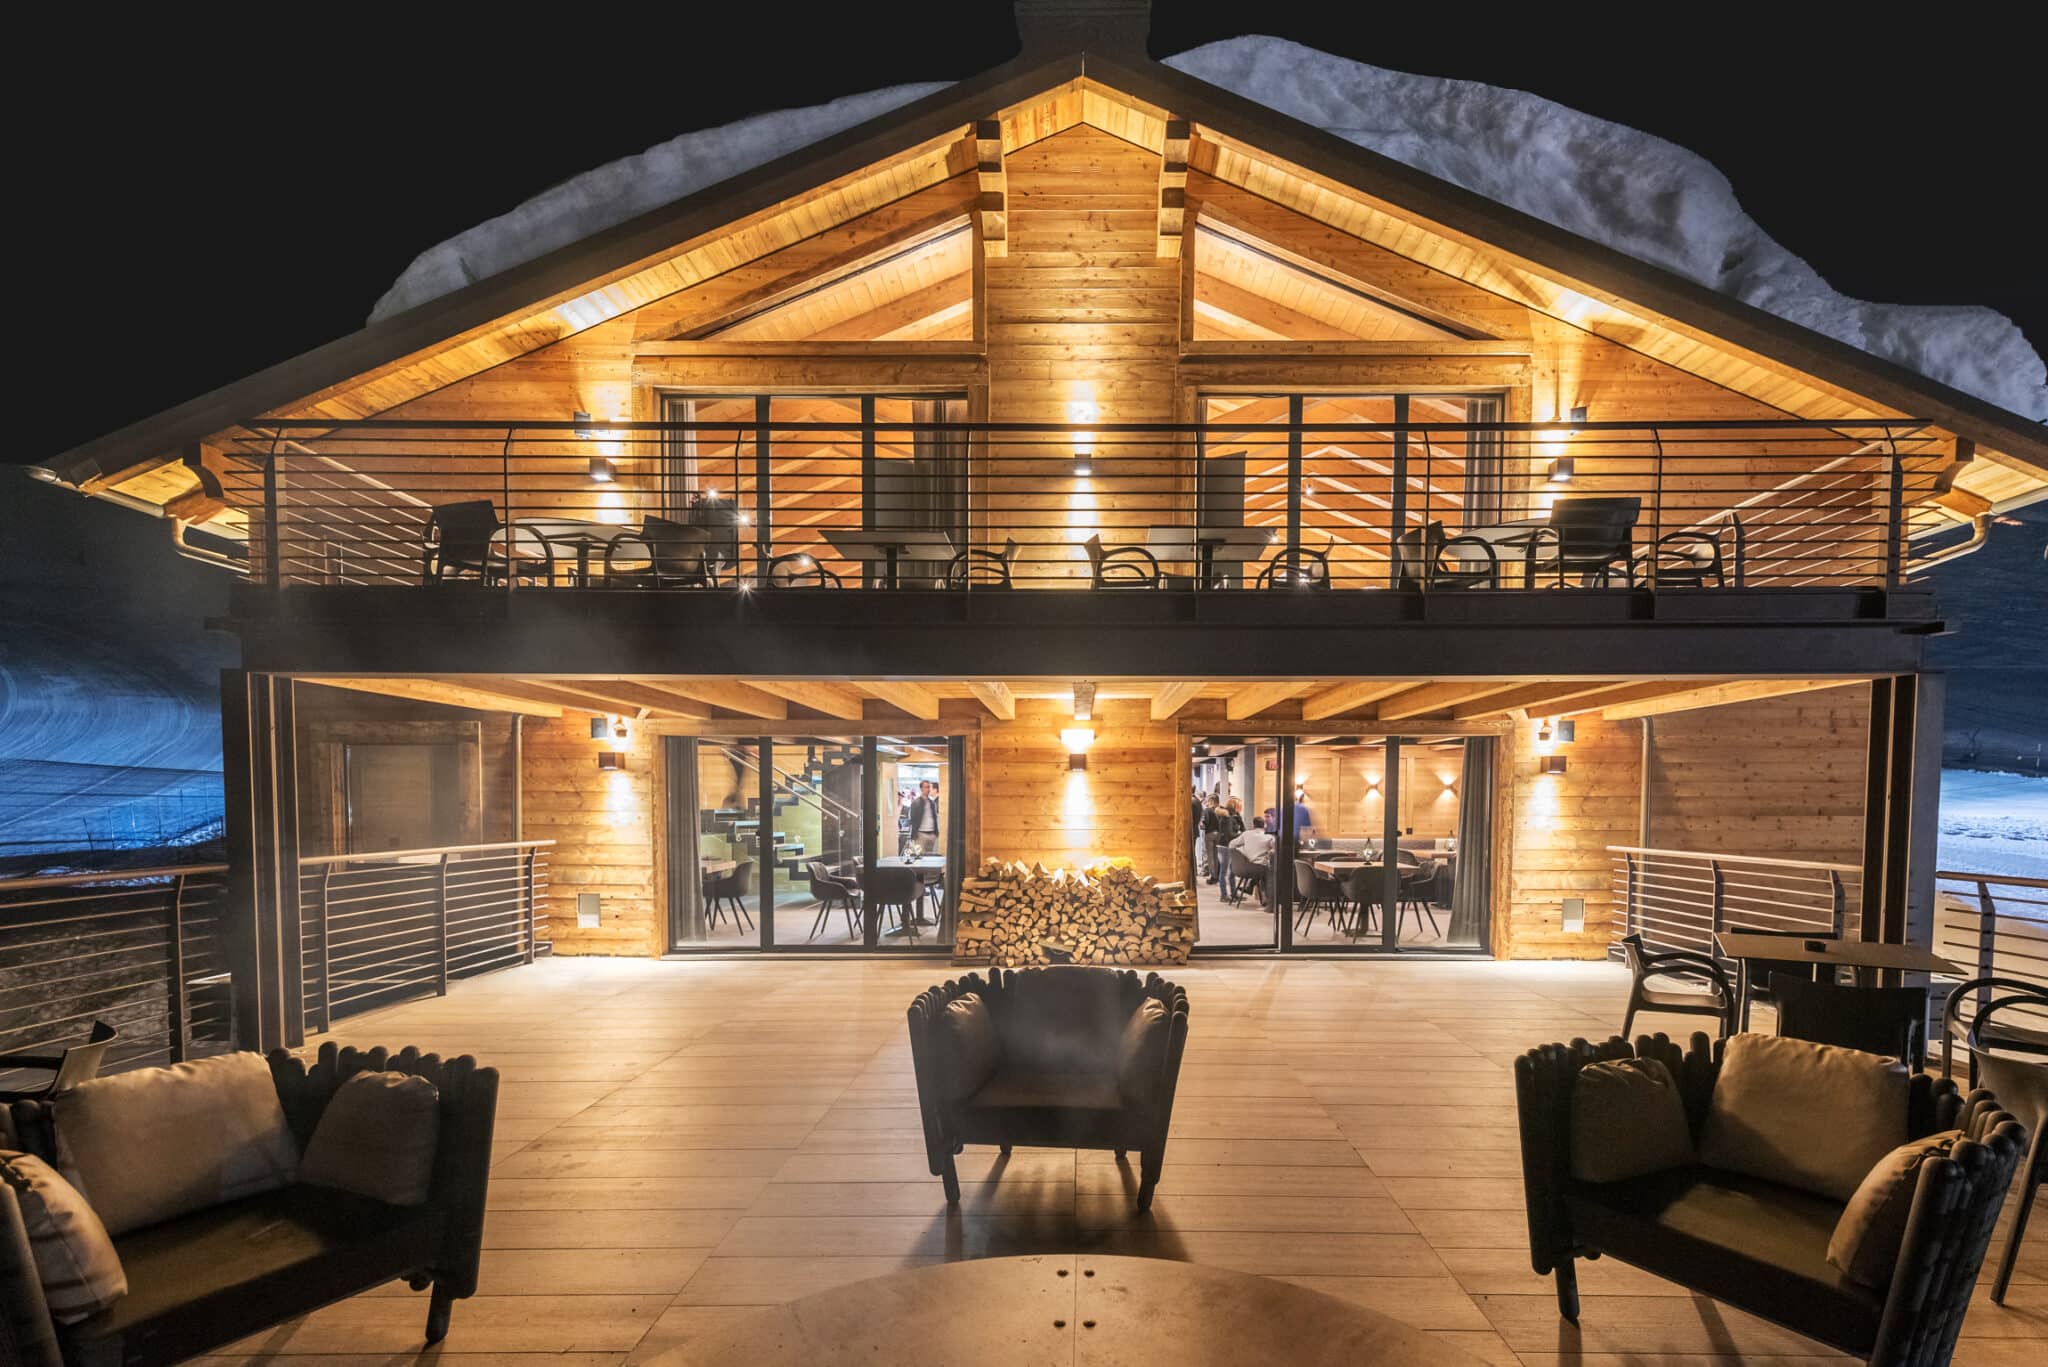 Шале-ресторан «La Loge du Massif» на склоне предлагает гостям уникальный сервис: усуги ski-консьержа, а также комнату для хранения лыжного оборудования. Кроме того, ресторан, бар с открытой террасой и гастрономический сэндвич-бар.